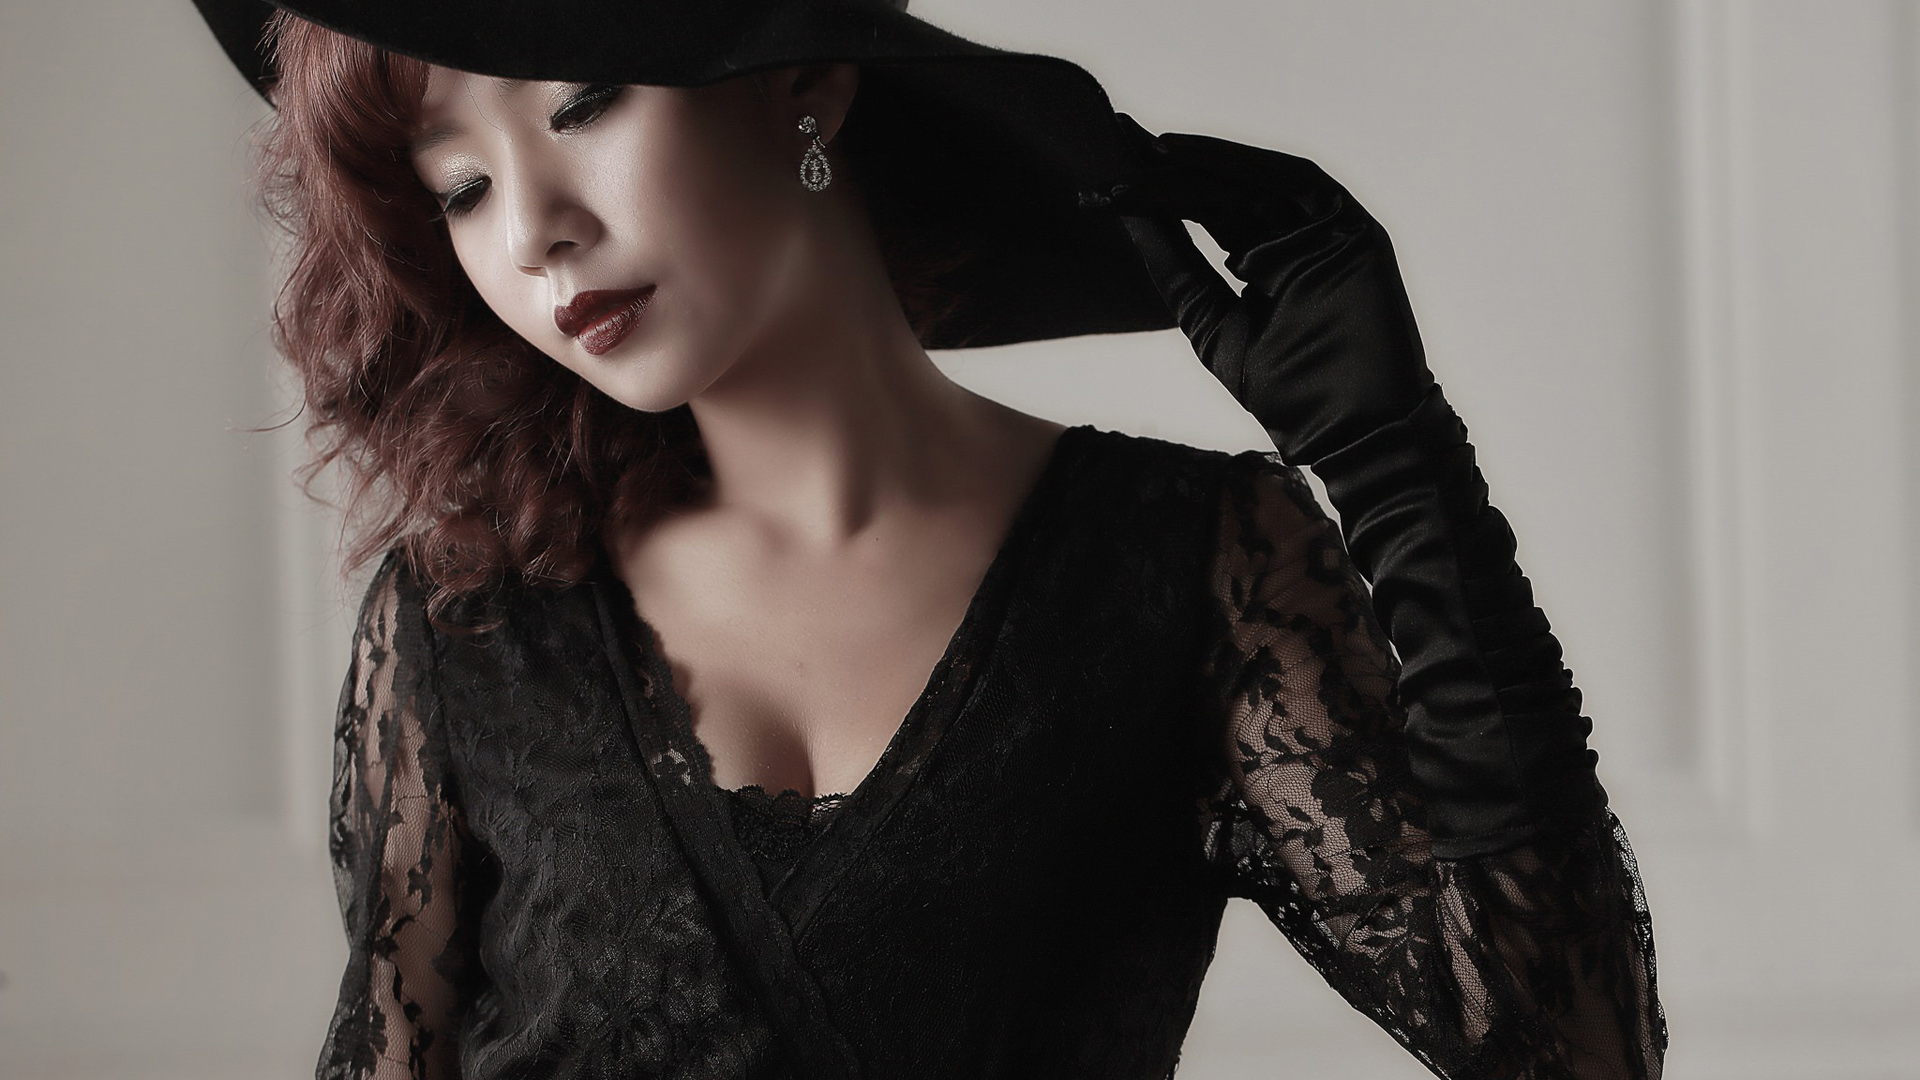 黑色服装,手套,帽,美女壁纸